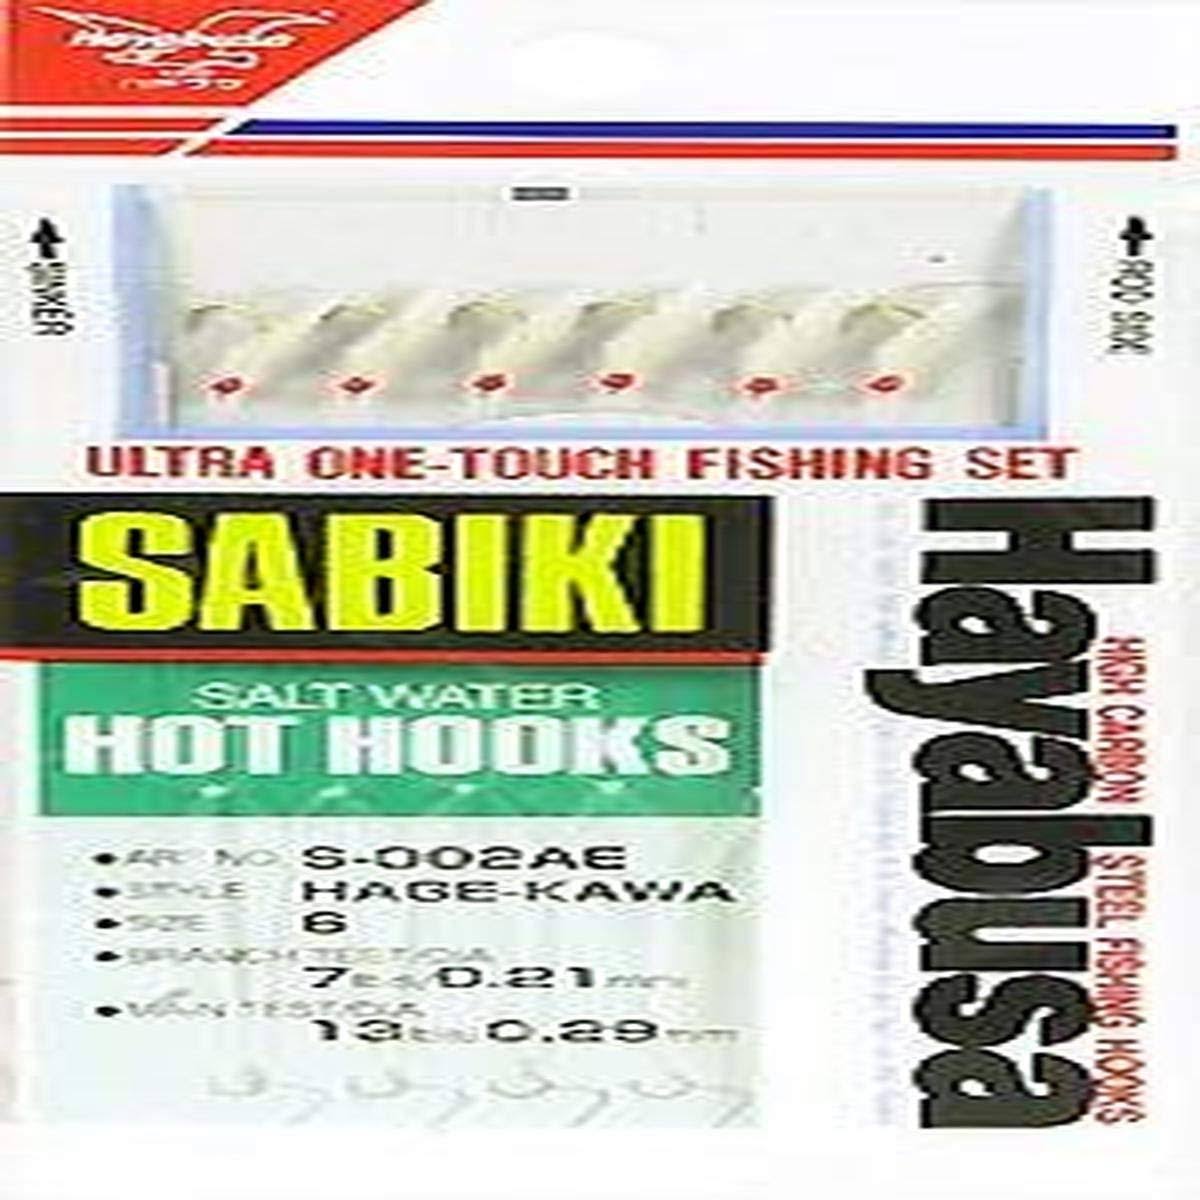 Hayabusa Saltwater Red Hot Hooks Sabiki Rigs Pack - 6pk, size 6